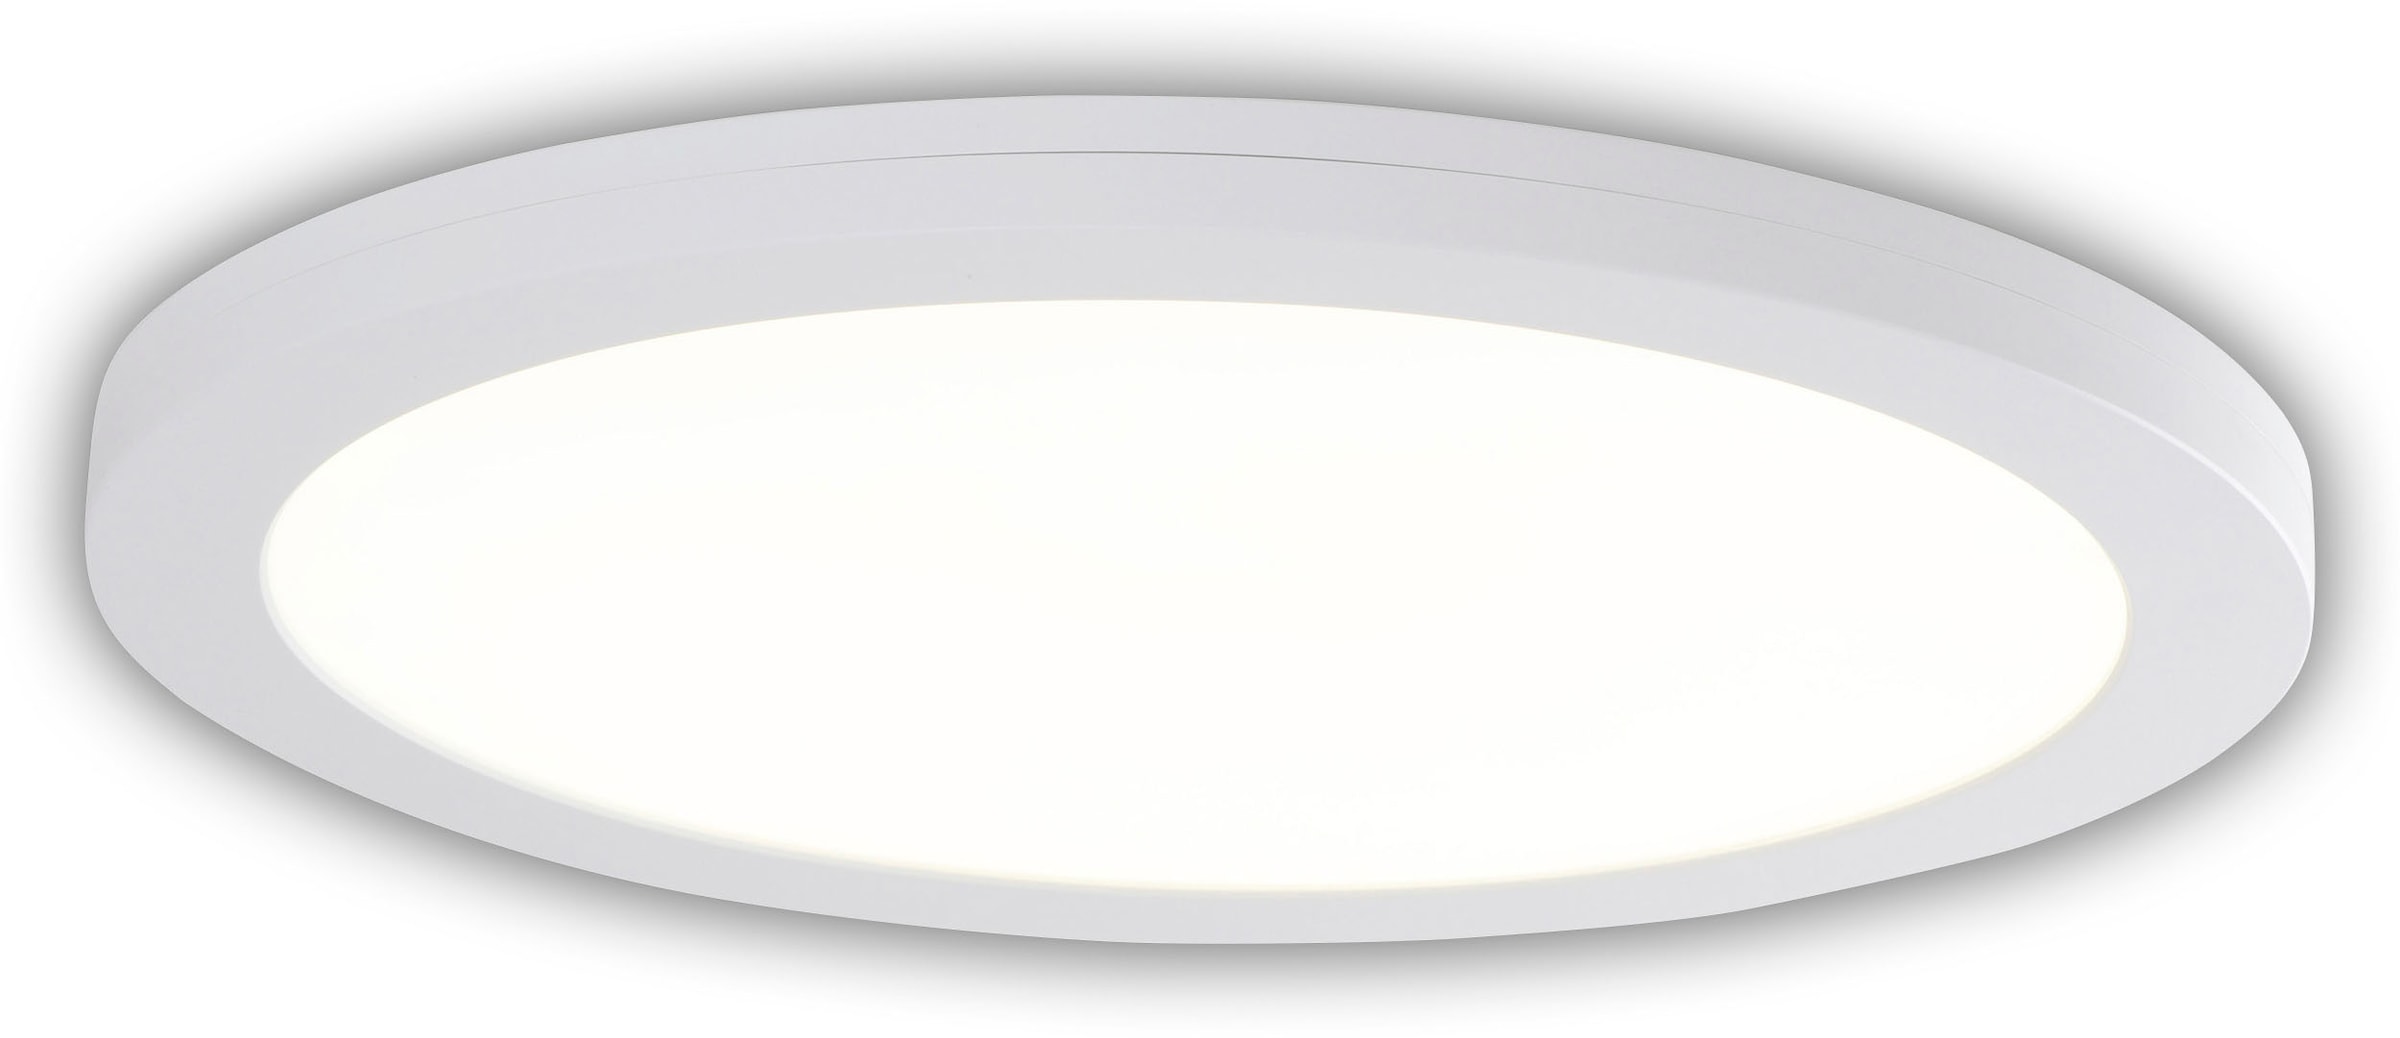 Ovale LED-Deckenleuchte - 4000K - mit Nachtlicht - ohne Schalter